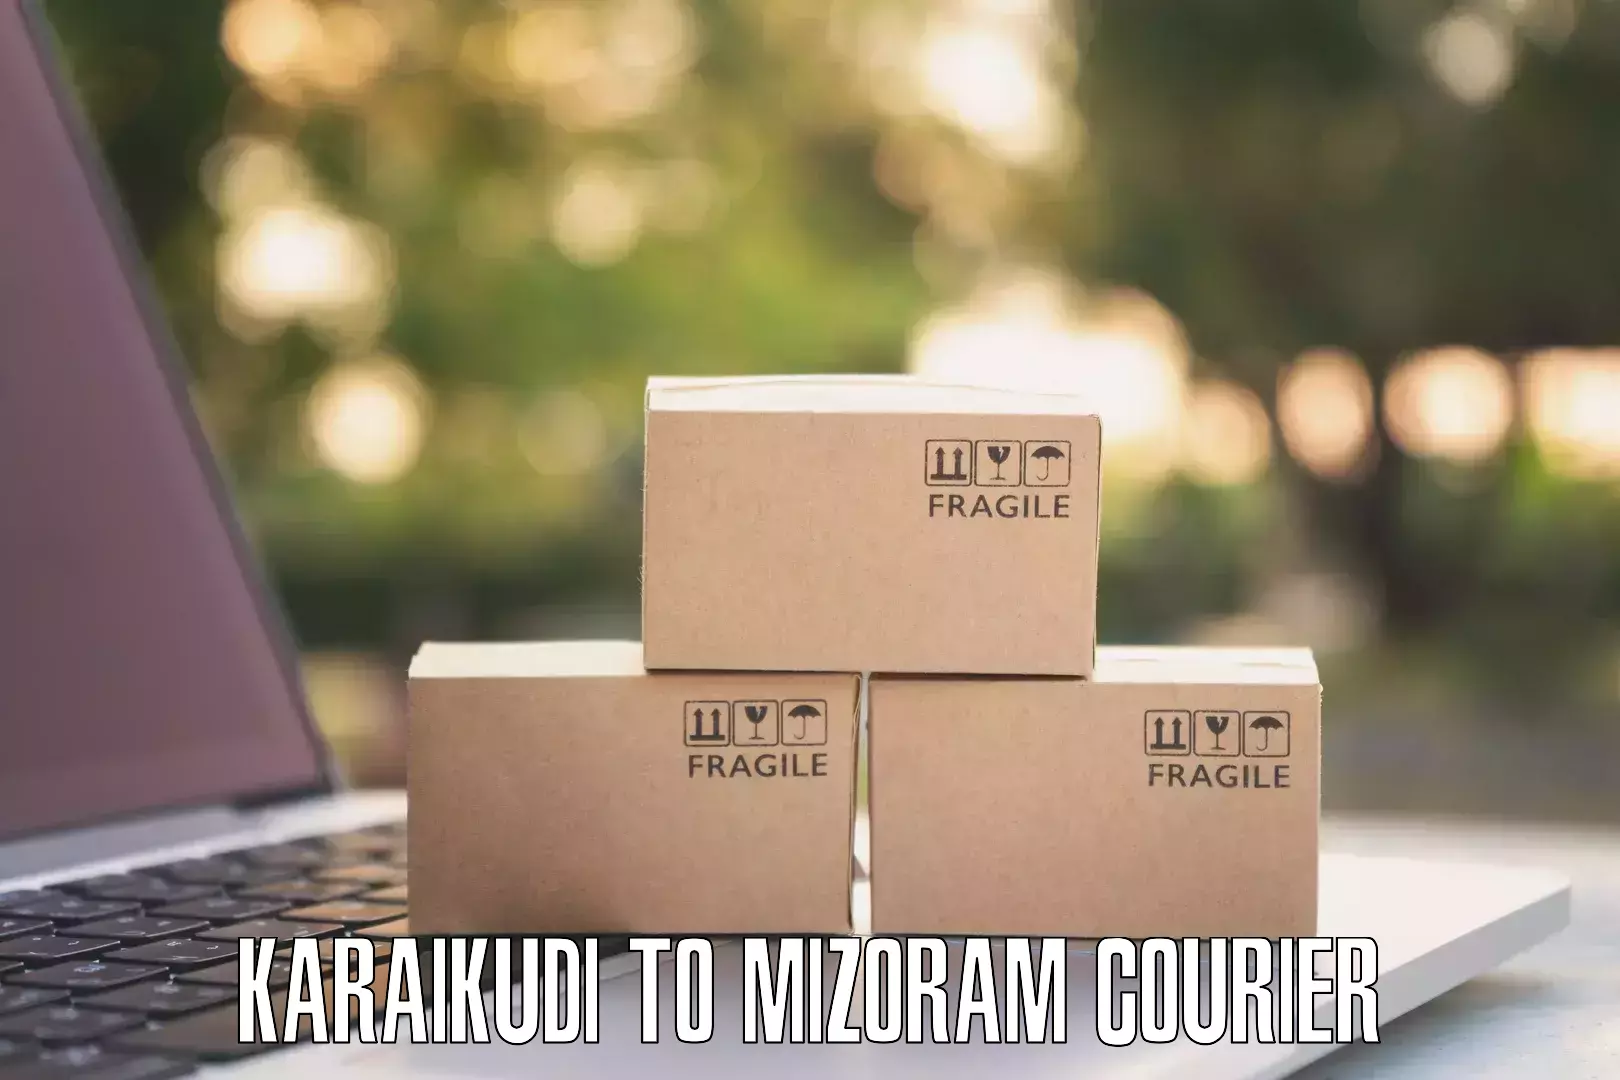 Urban courier service Karaikudi to Saiha